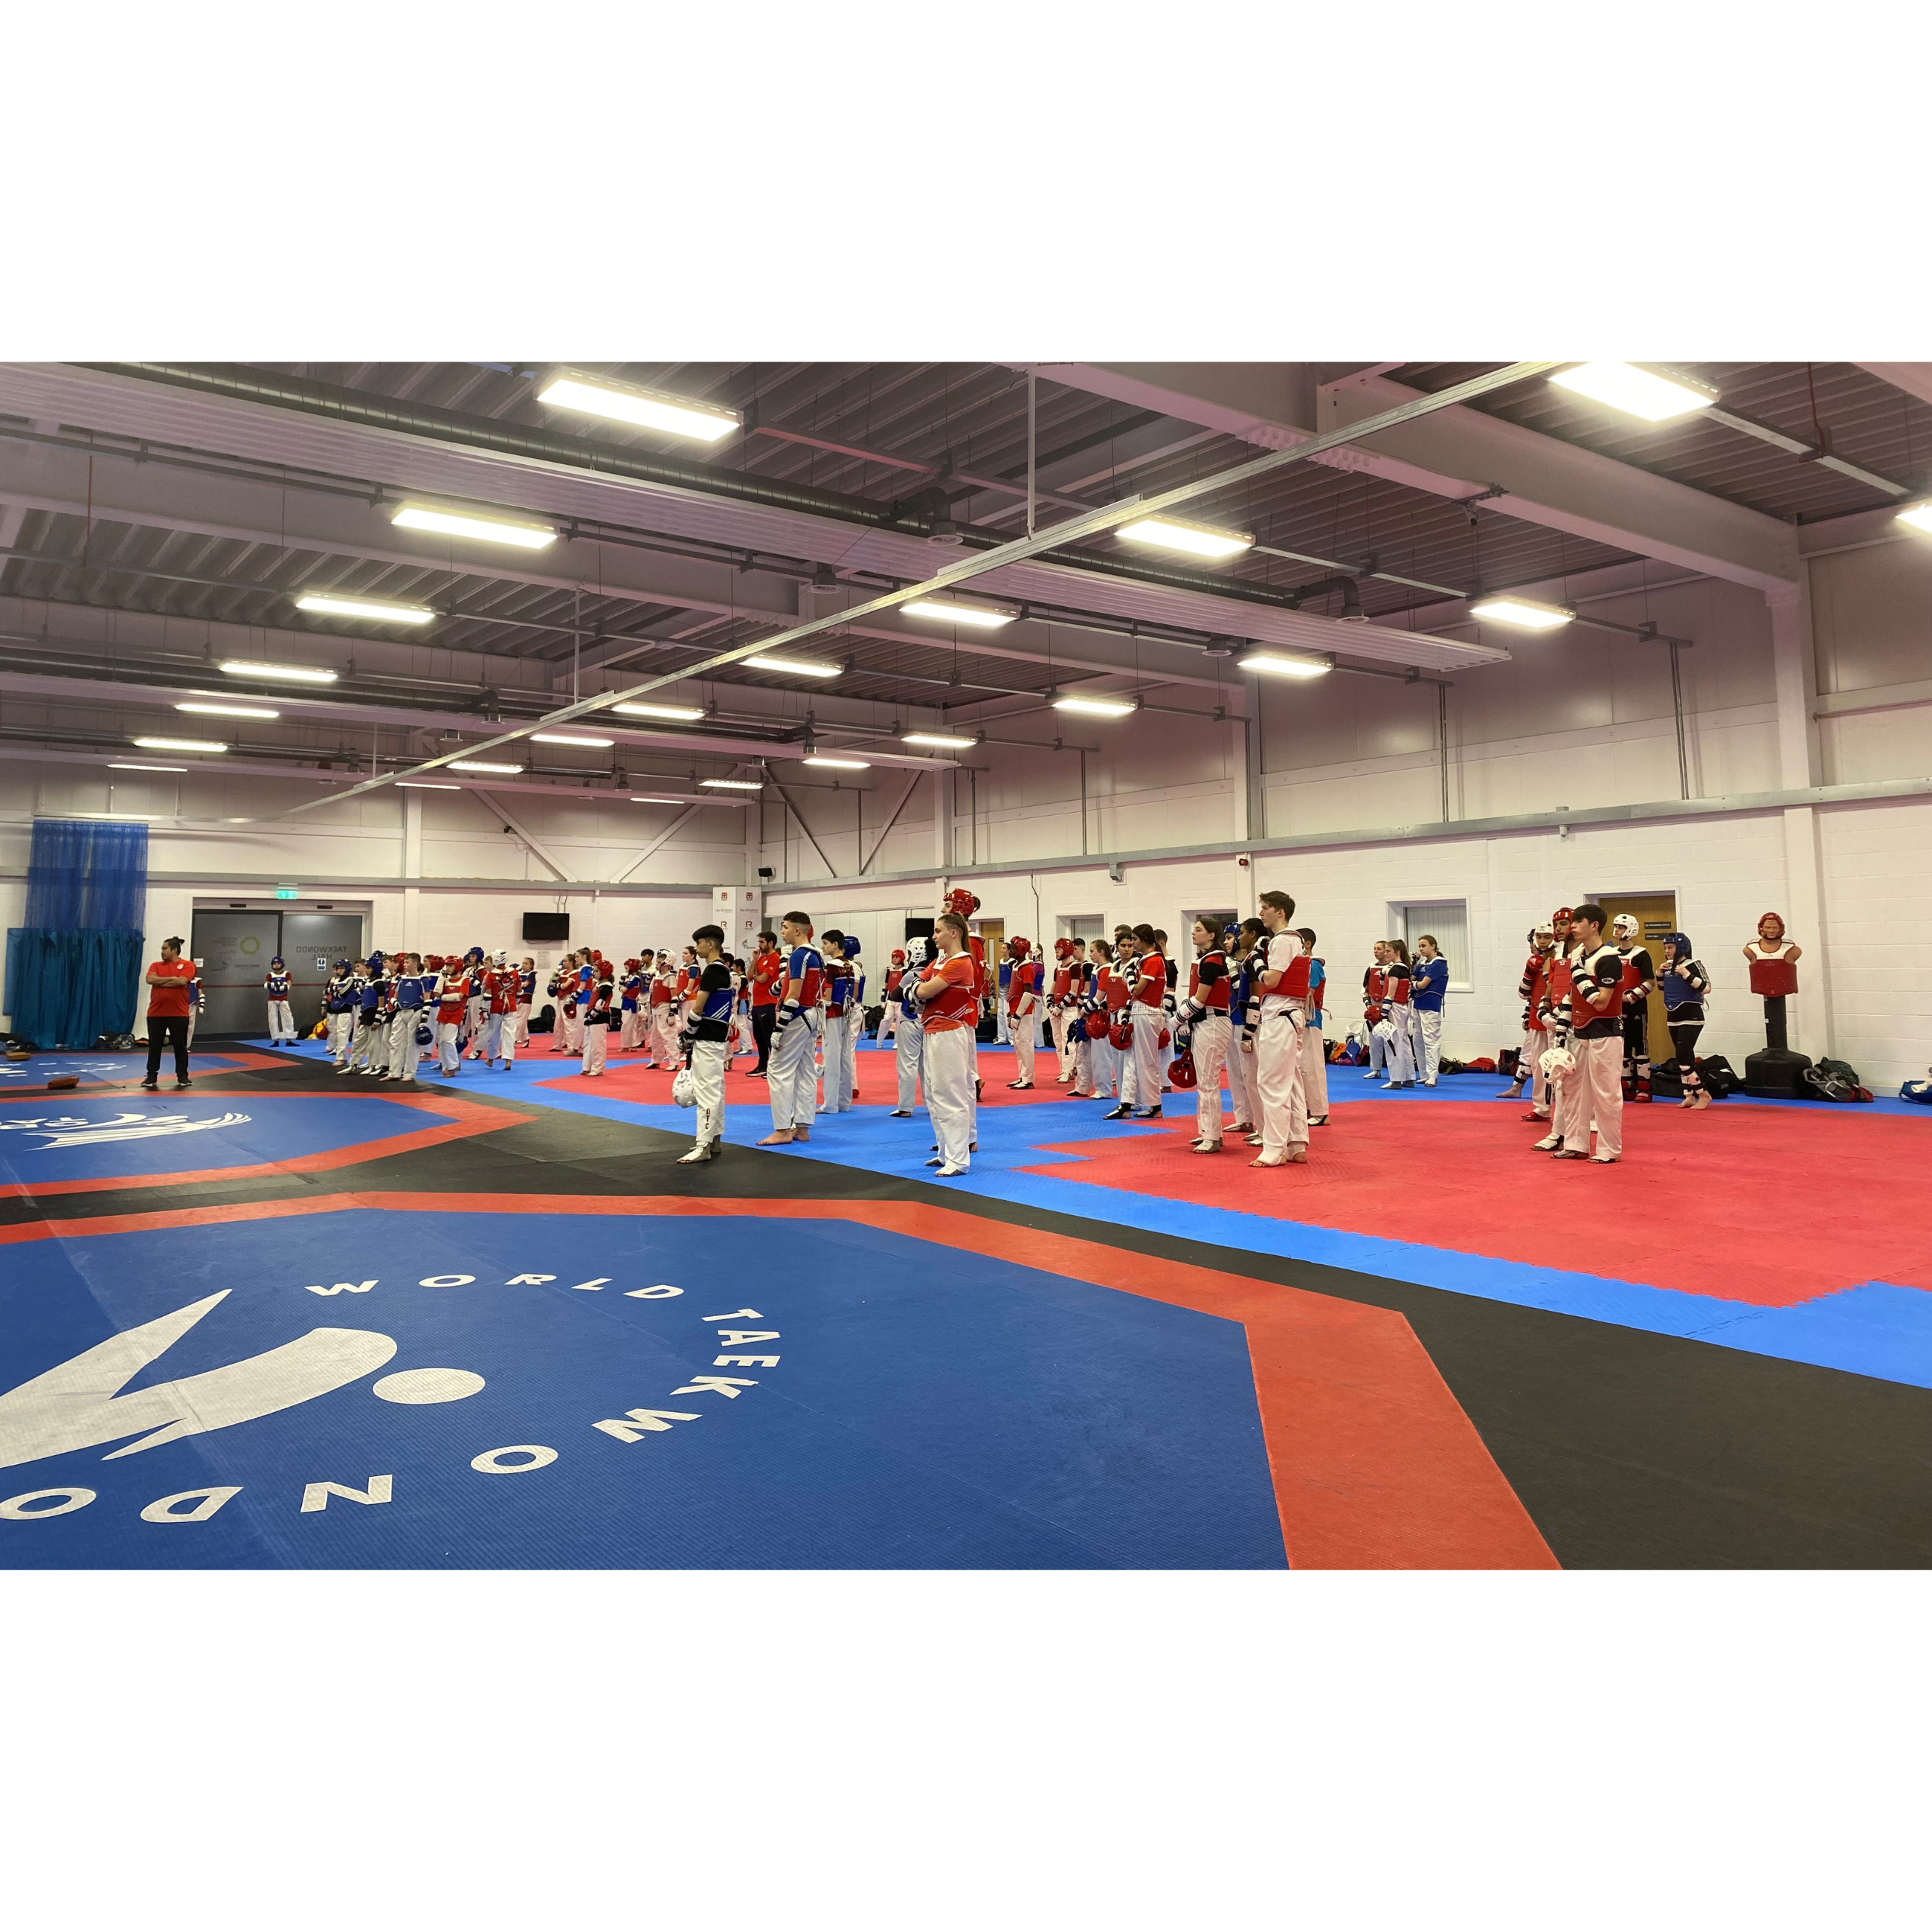 Taekwondo at GB Taekwondo in Manchester